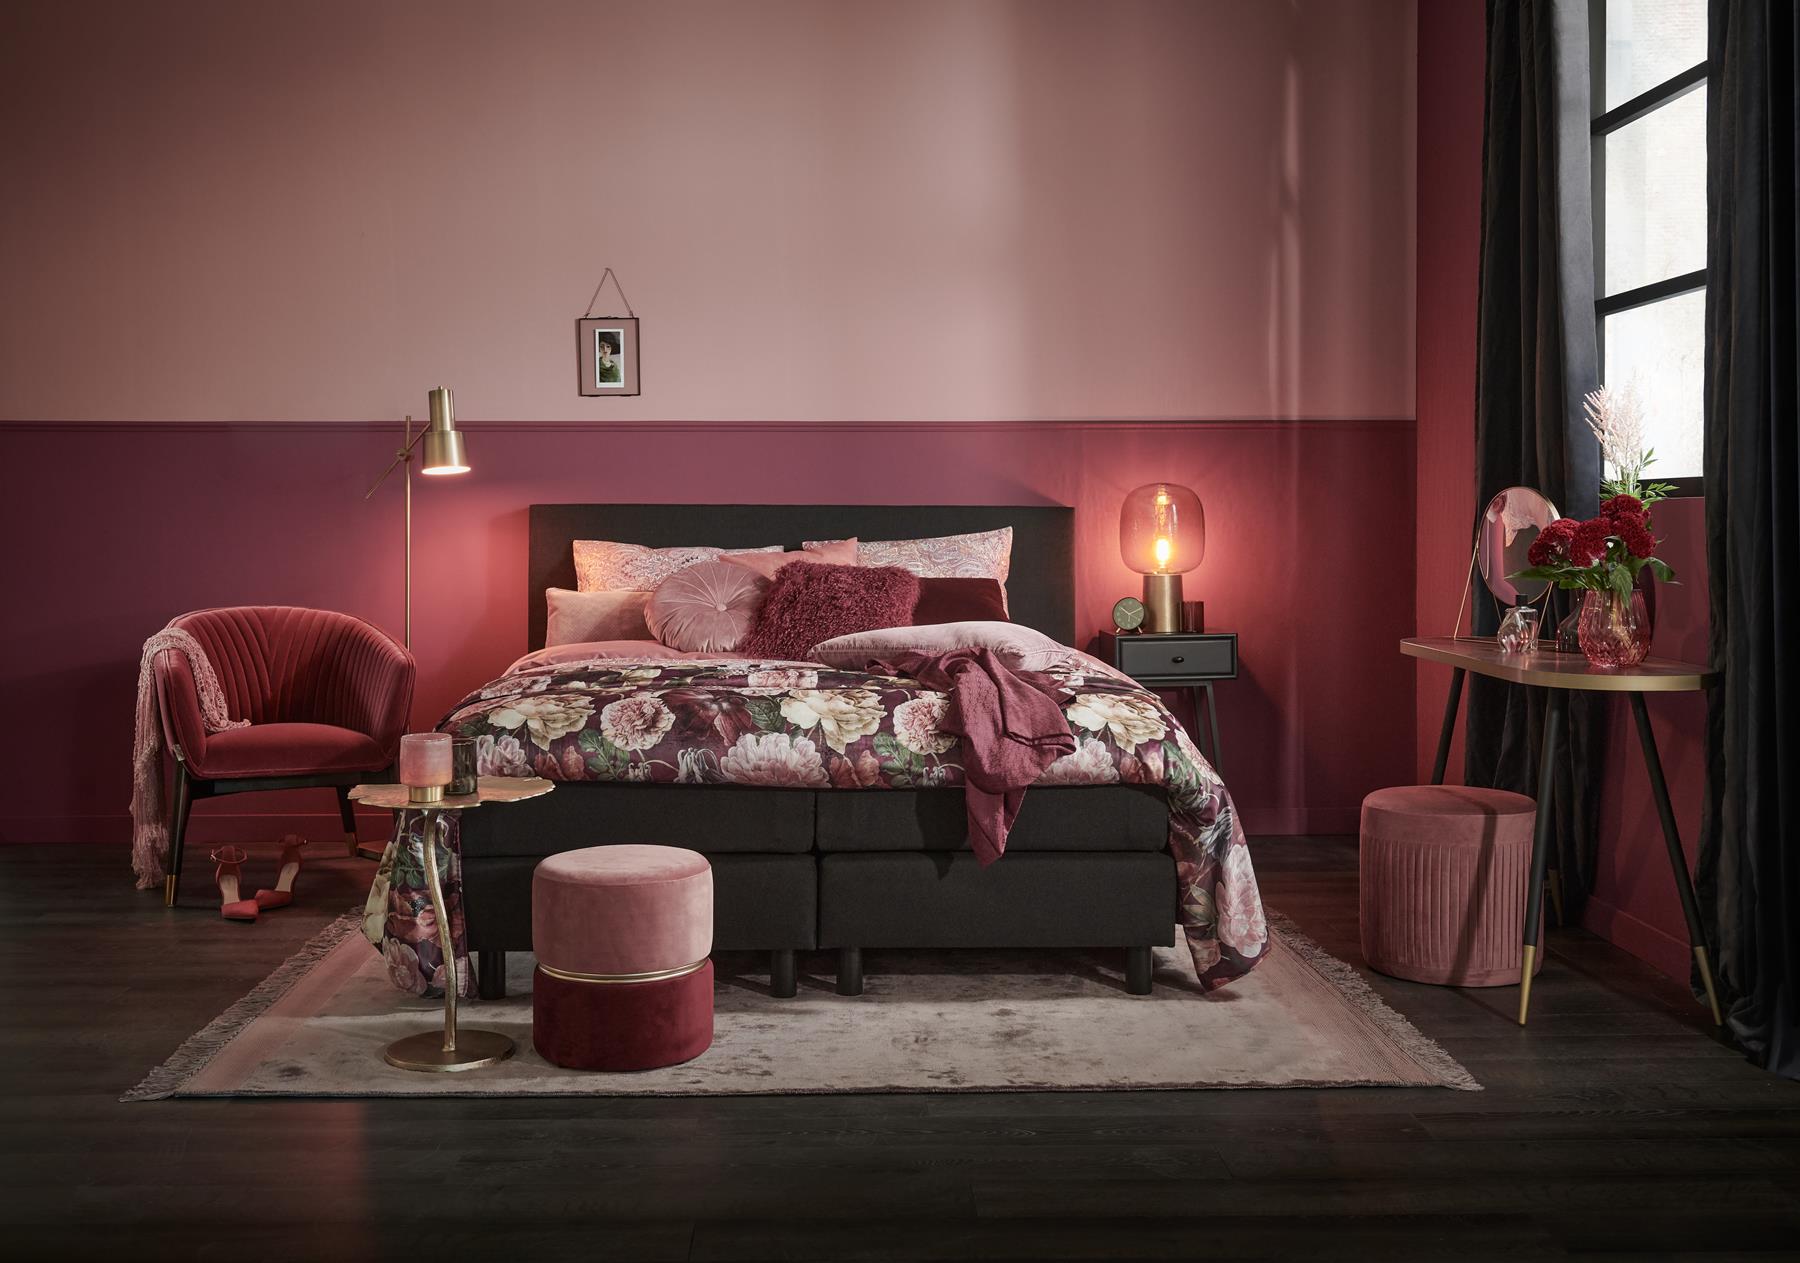 Shop de look: romantische slaapkamer warmrood